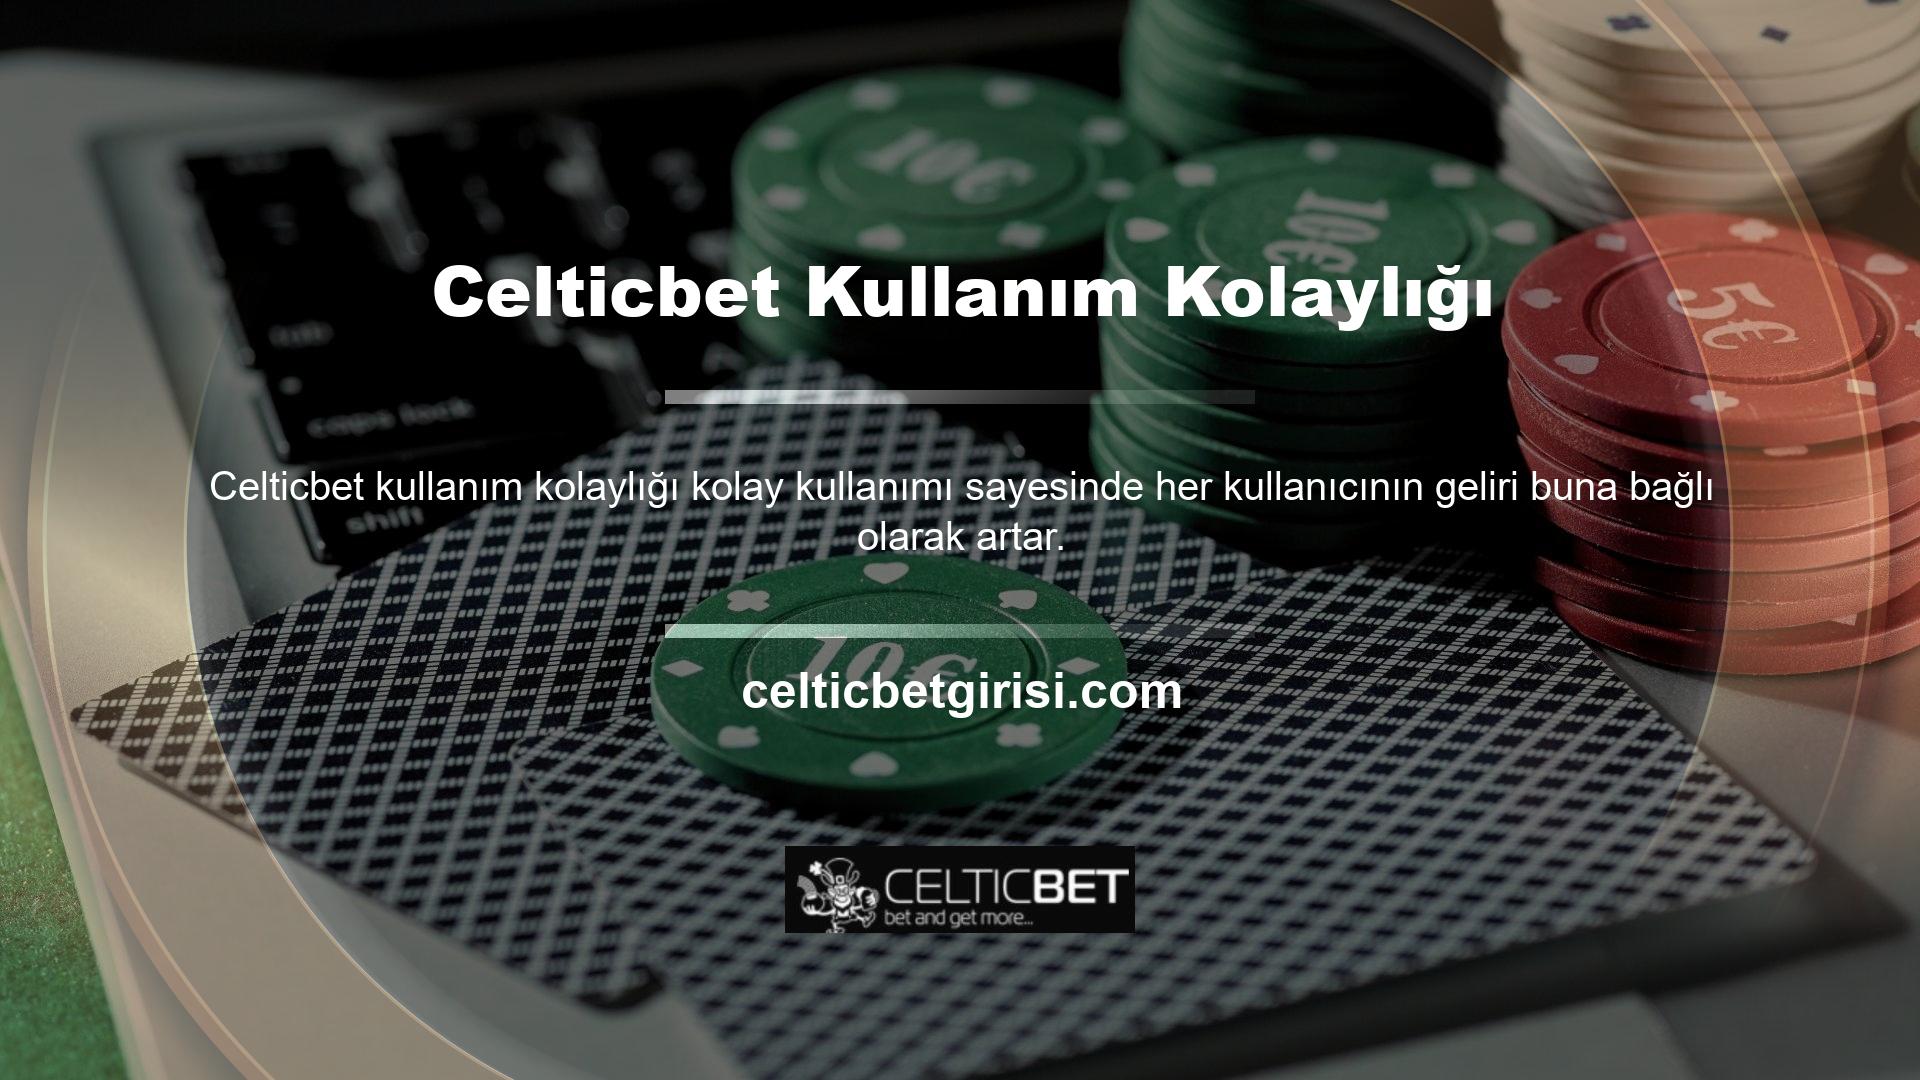 Celticbet cihazlarının kullanımı kolay mobil versiyonunu kullanarak istediğiniz zaman, istediğiniz yerde kolayca bahis oynayabilir ve casino oyunlarından para kazanabilirsiniz